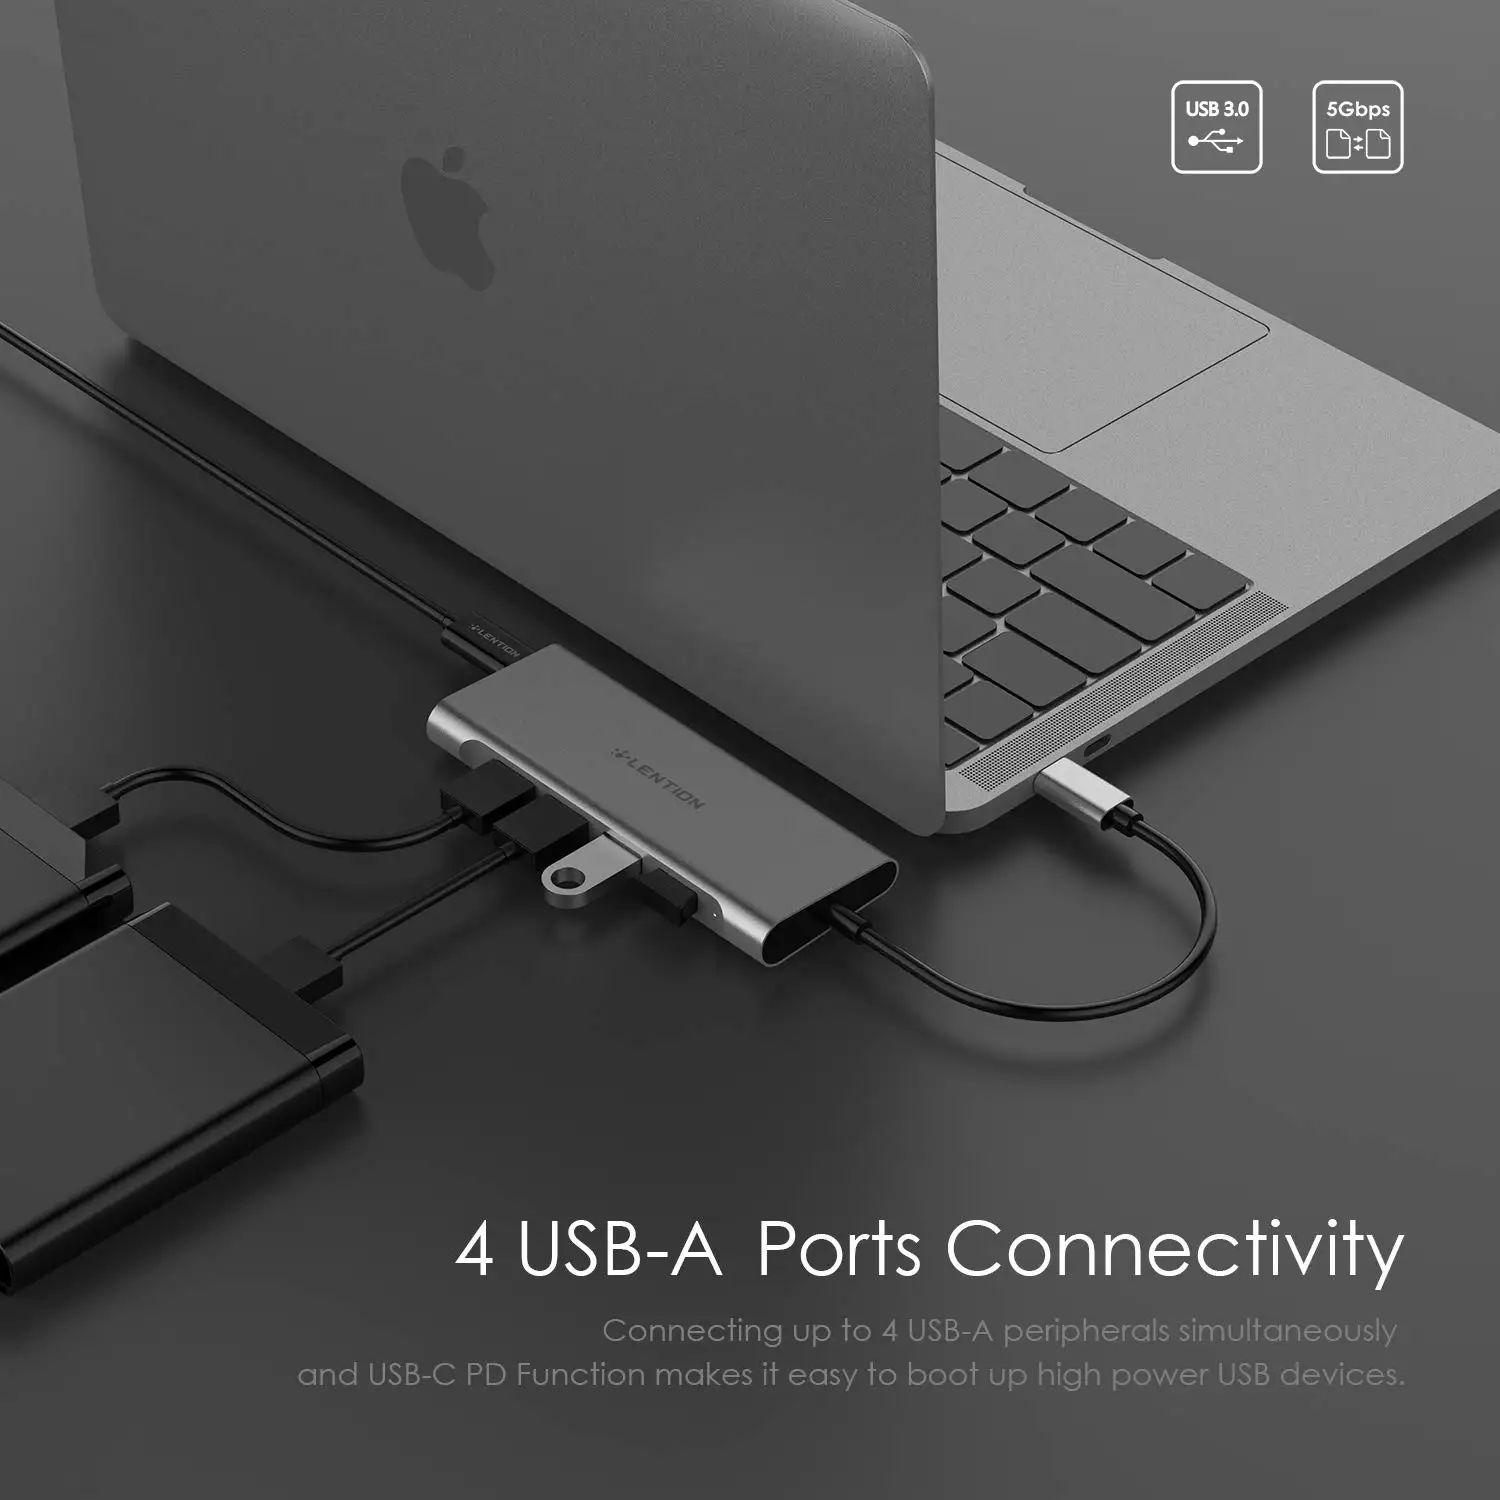 Lention USB-C Multi-Port Hub cu 4K Ieșire HDMI, 4 porturi USB 3.0, Tip C, Adaptor de Încărcare pentru 2020-2016 MacBook Pro13/15/16, Suprafata